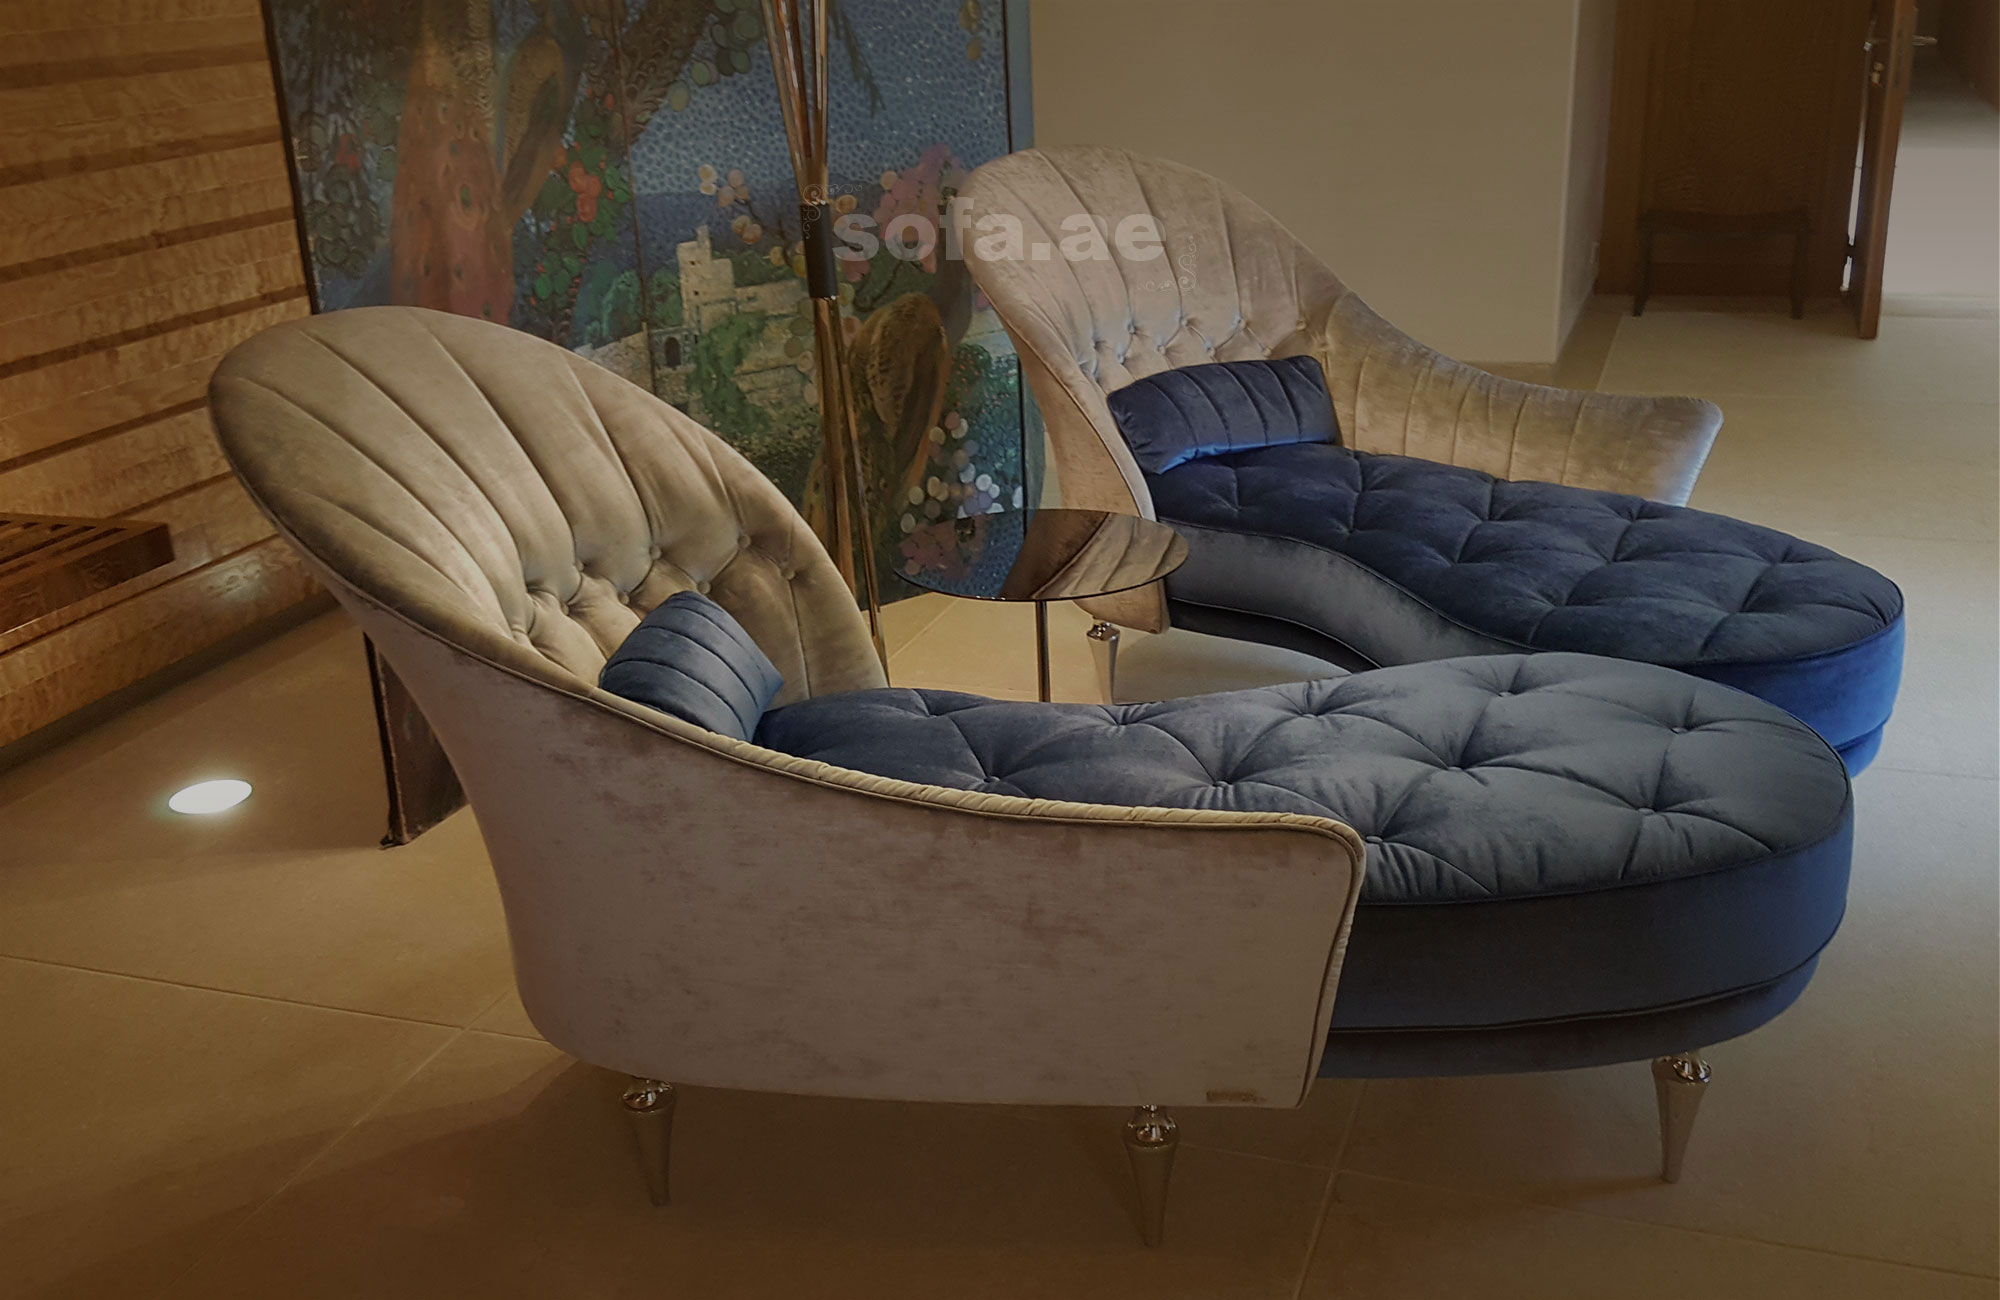 Sofa Repair & Upholstery Dubai | Leather Sofa Repair & Chair Upholstery